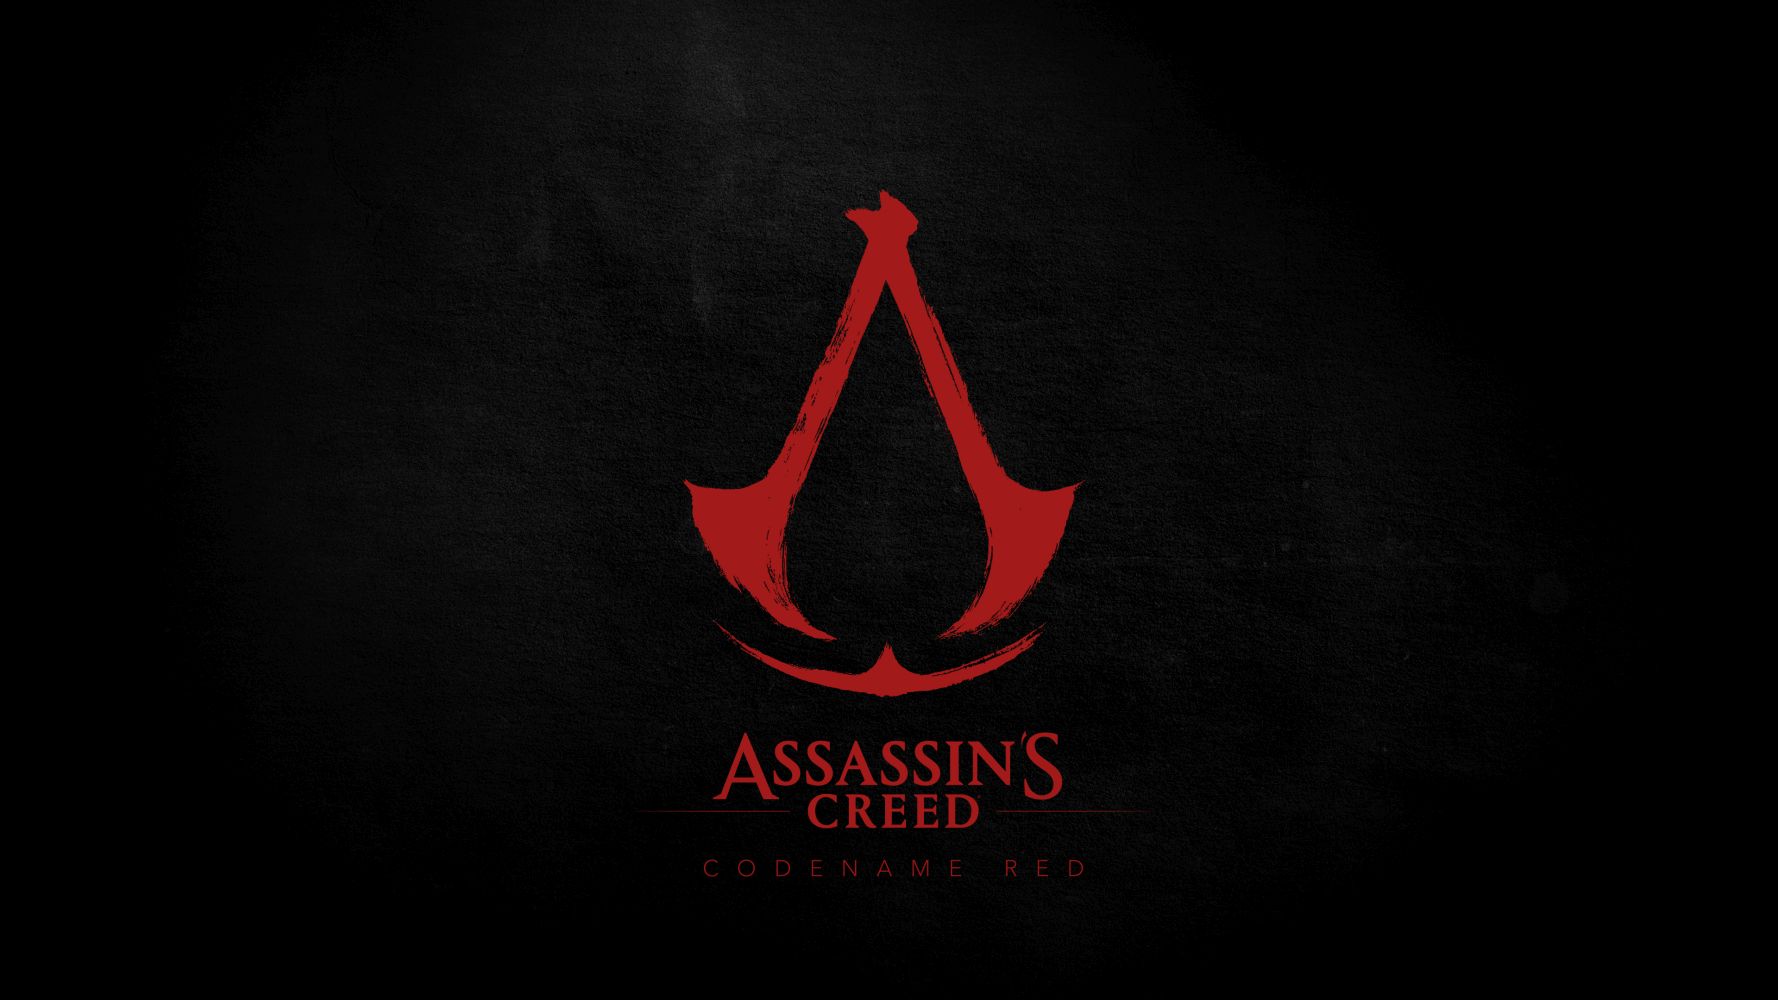 #Assassin’s Creed: Der nächste Flaggschiff-Titel nach Mirage wird im feudalen Japan spielen